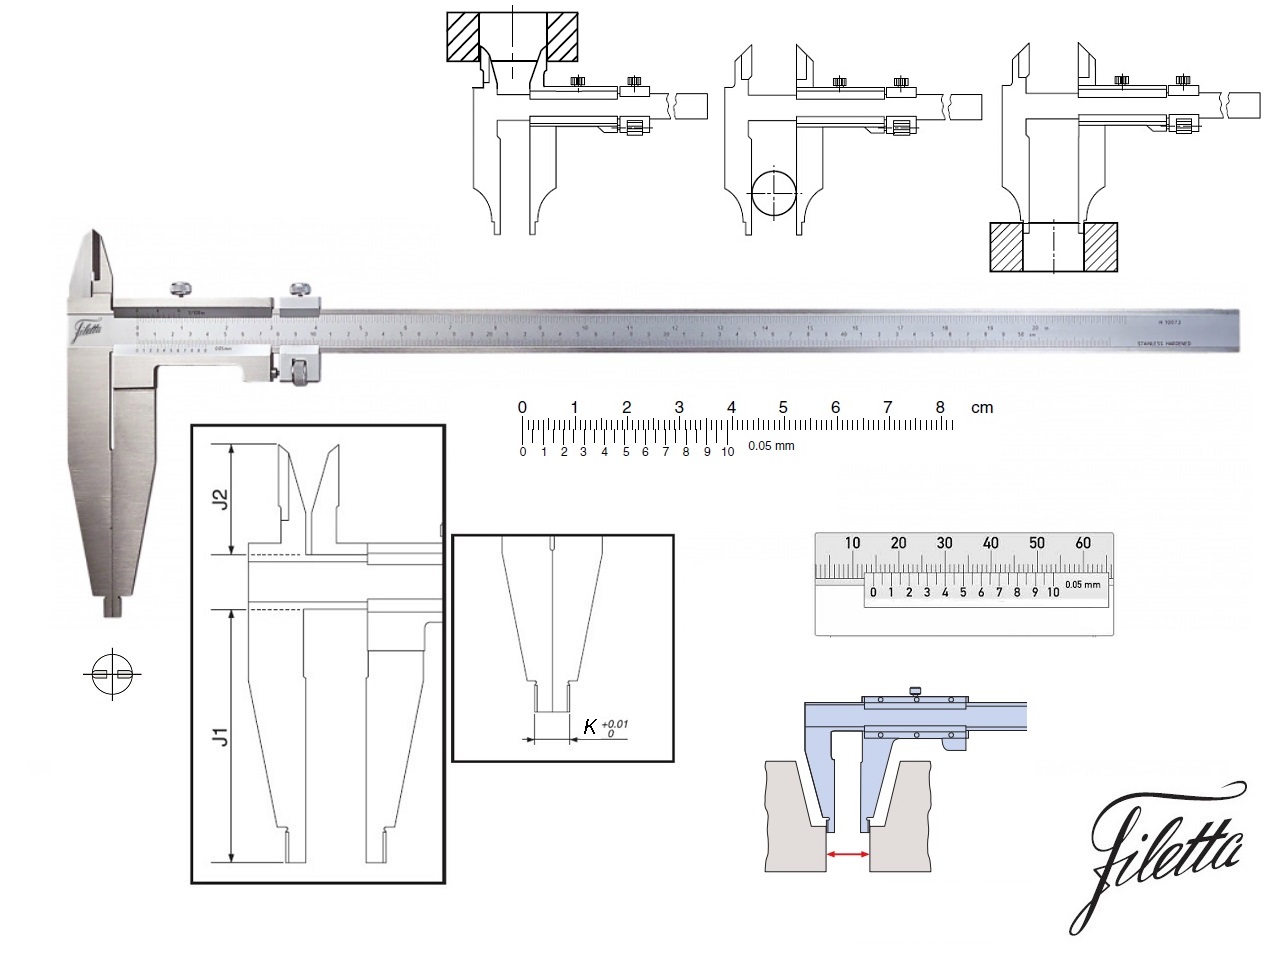 Posuvné měřítko Filetta 0-1500 mm, čelisti 200 mm, s měřicími nožíky pro vnitřní měření